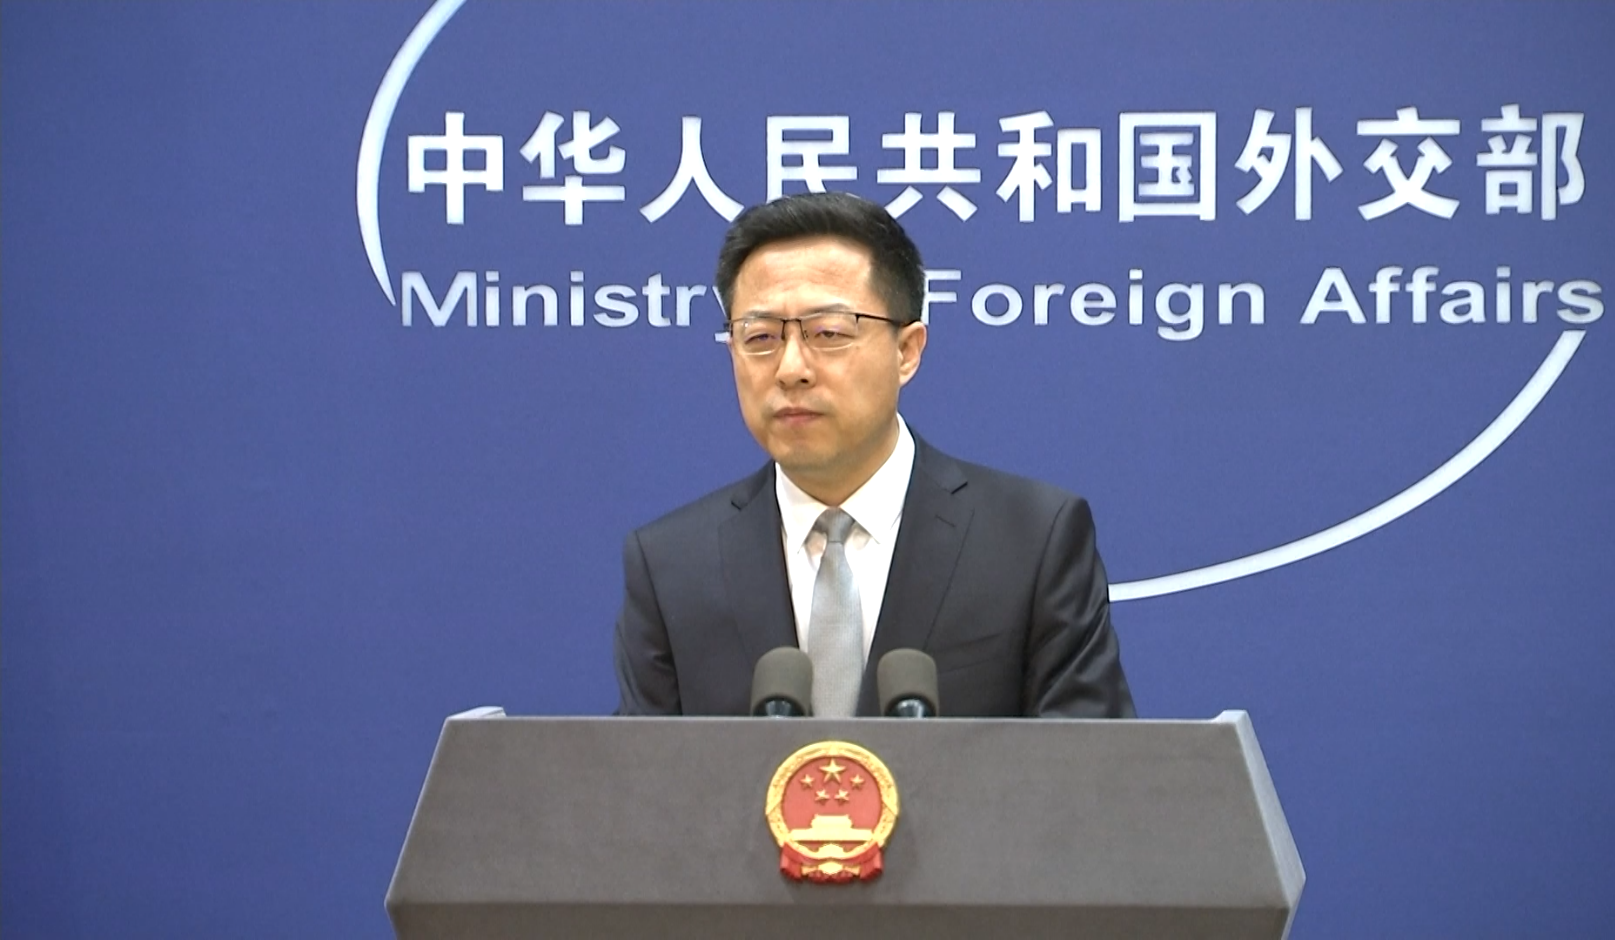 5월 24일 정례 브리핑에서 한미 정상회담에 대한 중국 측 입장을 발표하고 있는 외교부 자오리젠 대변인